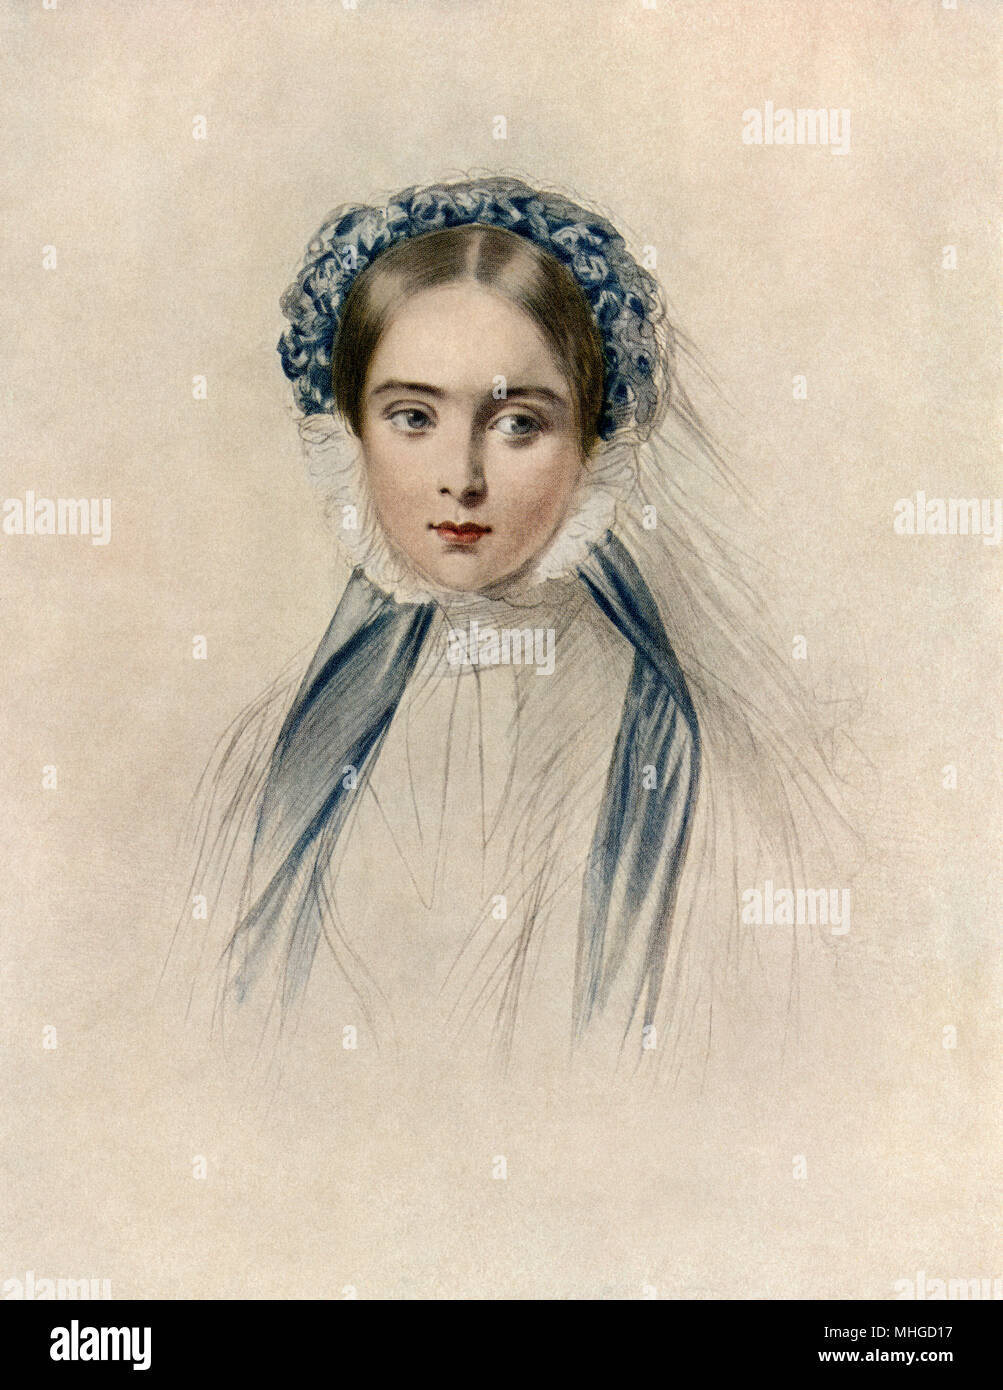 La reine Victoria au début de son règne. L'impression couleur reproduction d'un dessin contemporain Banque D'Images